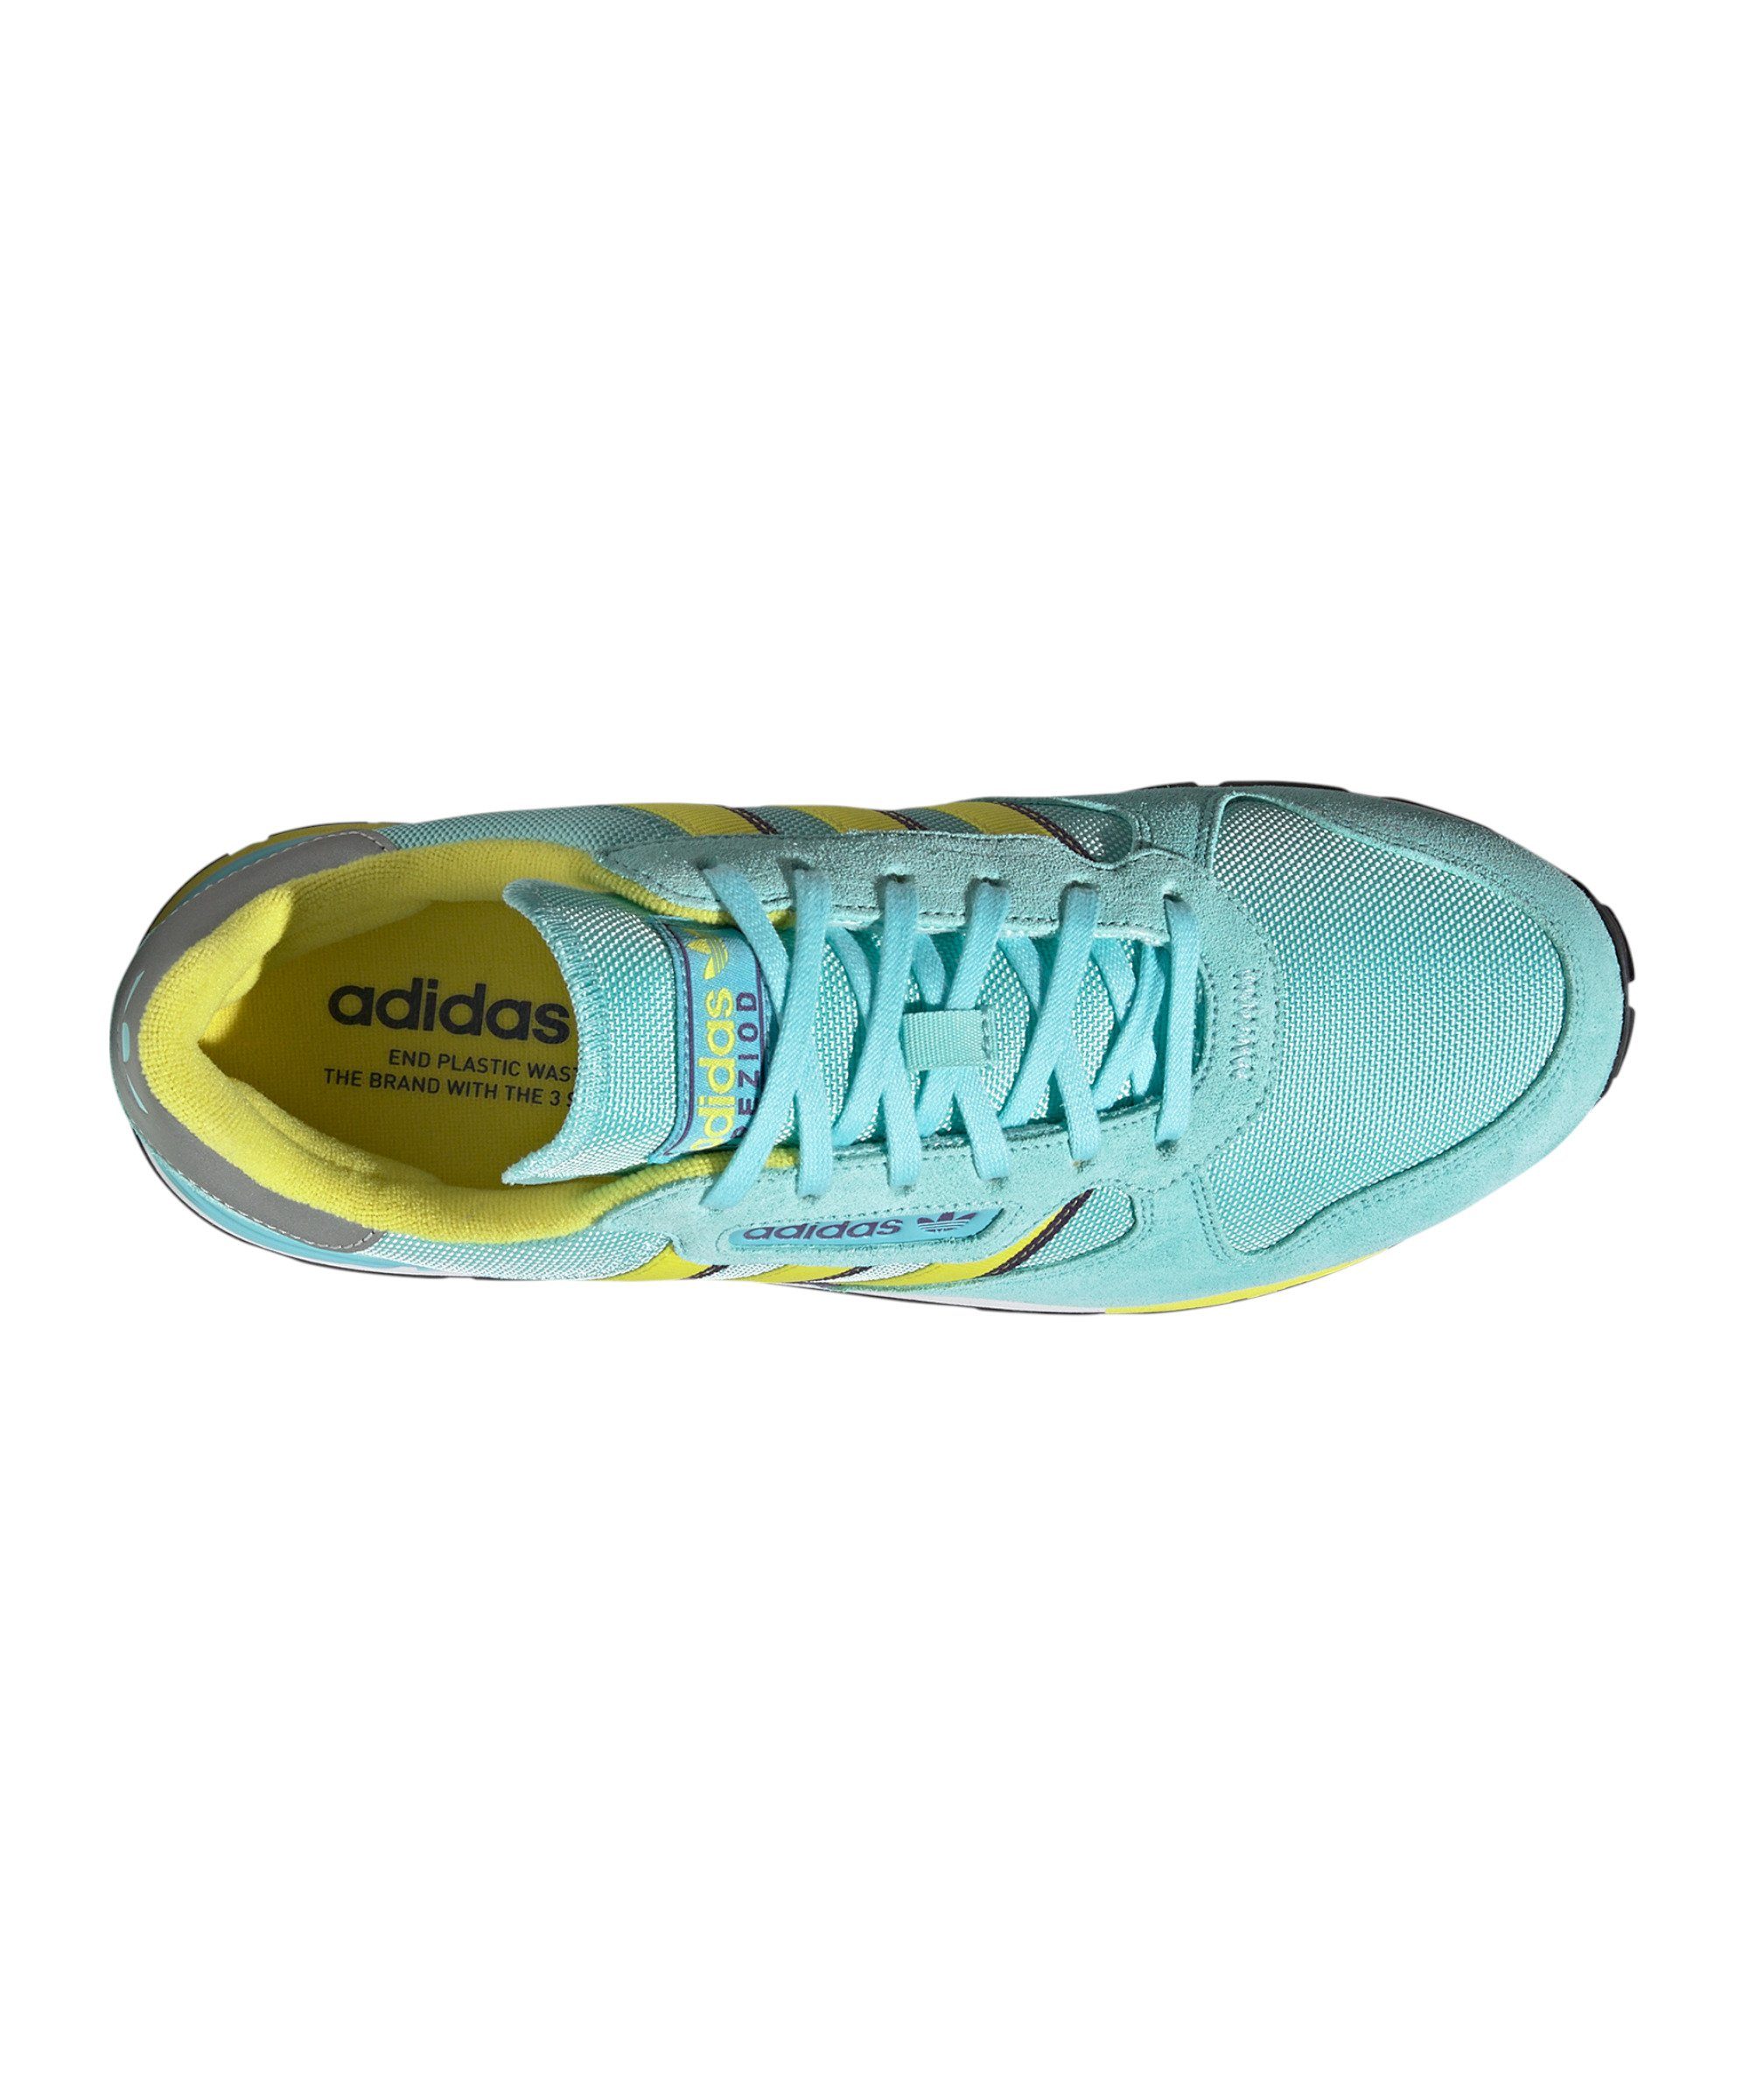 Treziod Sneaker blaugelblila adidas Originals 2